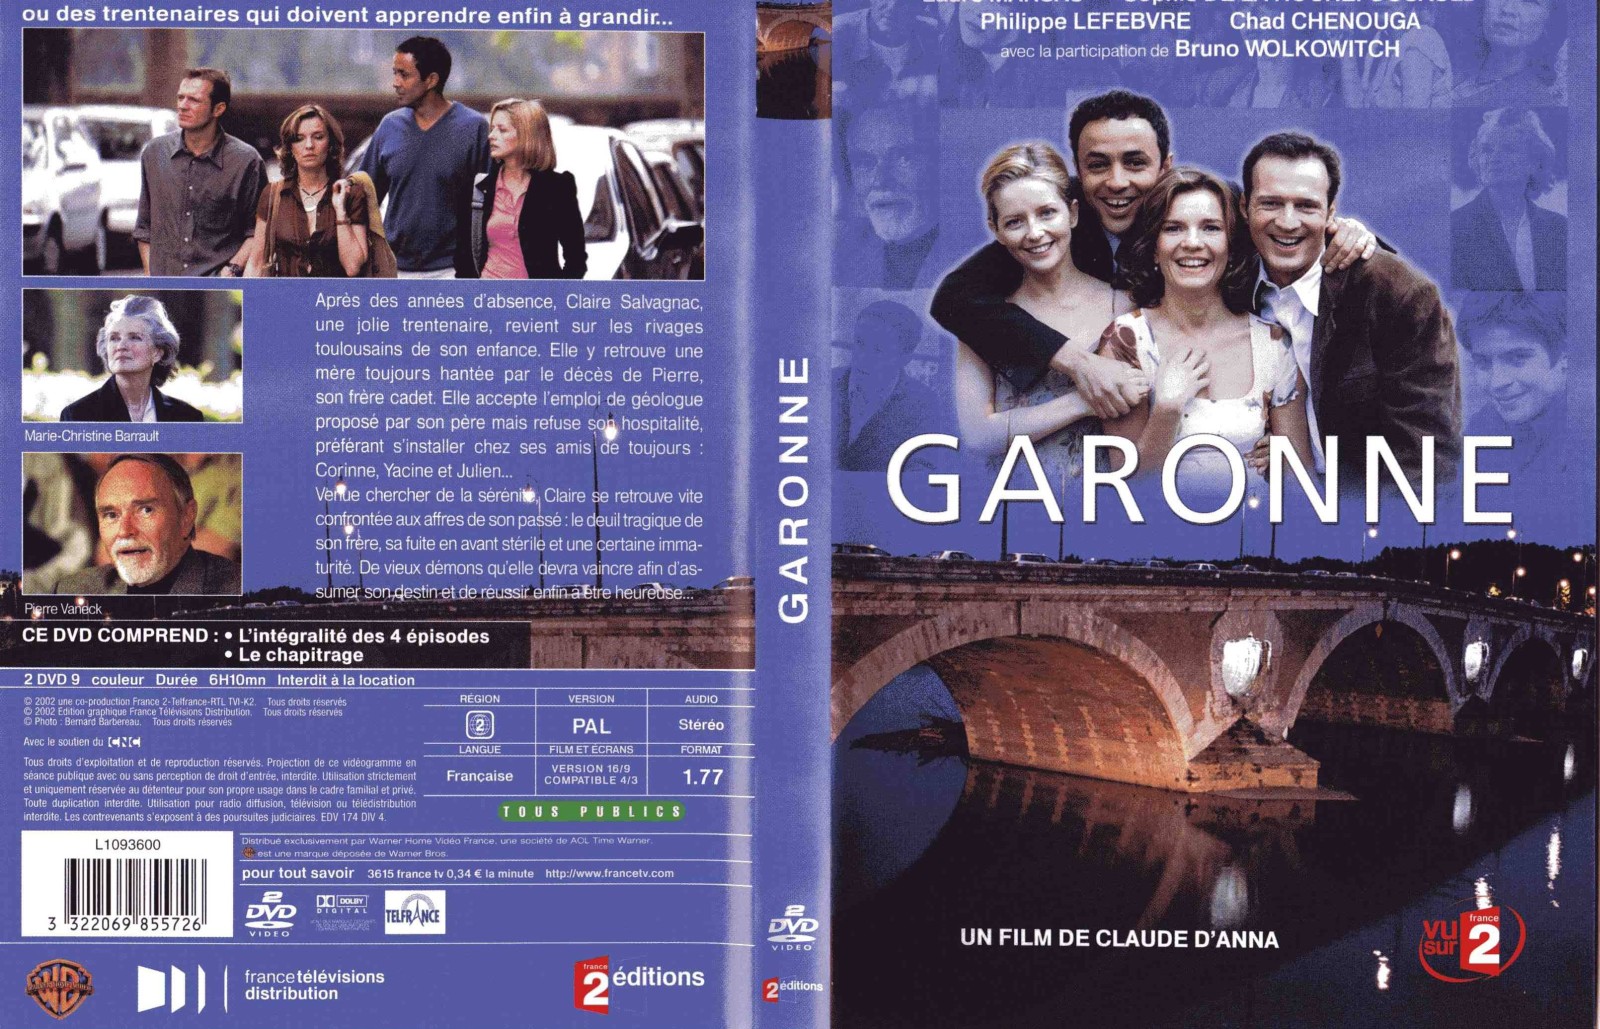 Jaquette DVD Garonne